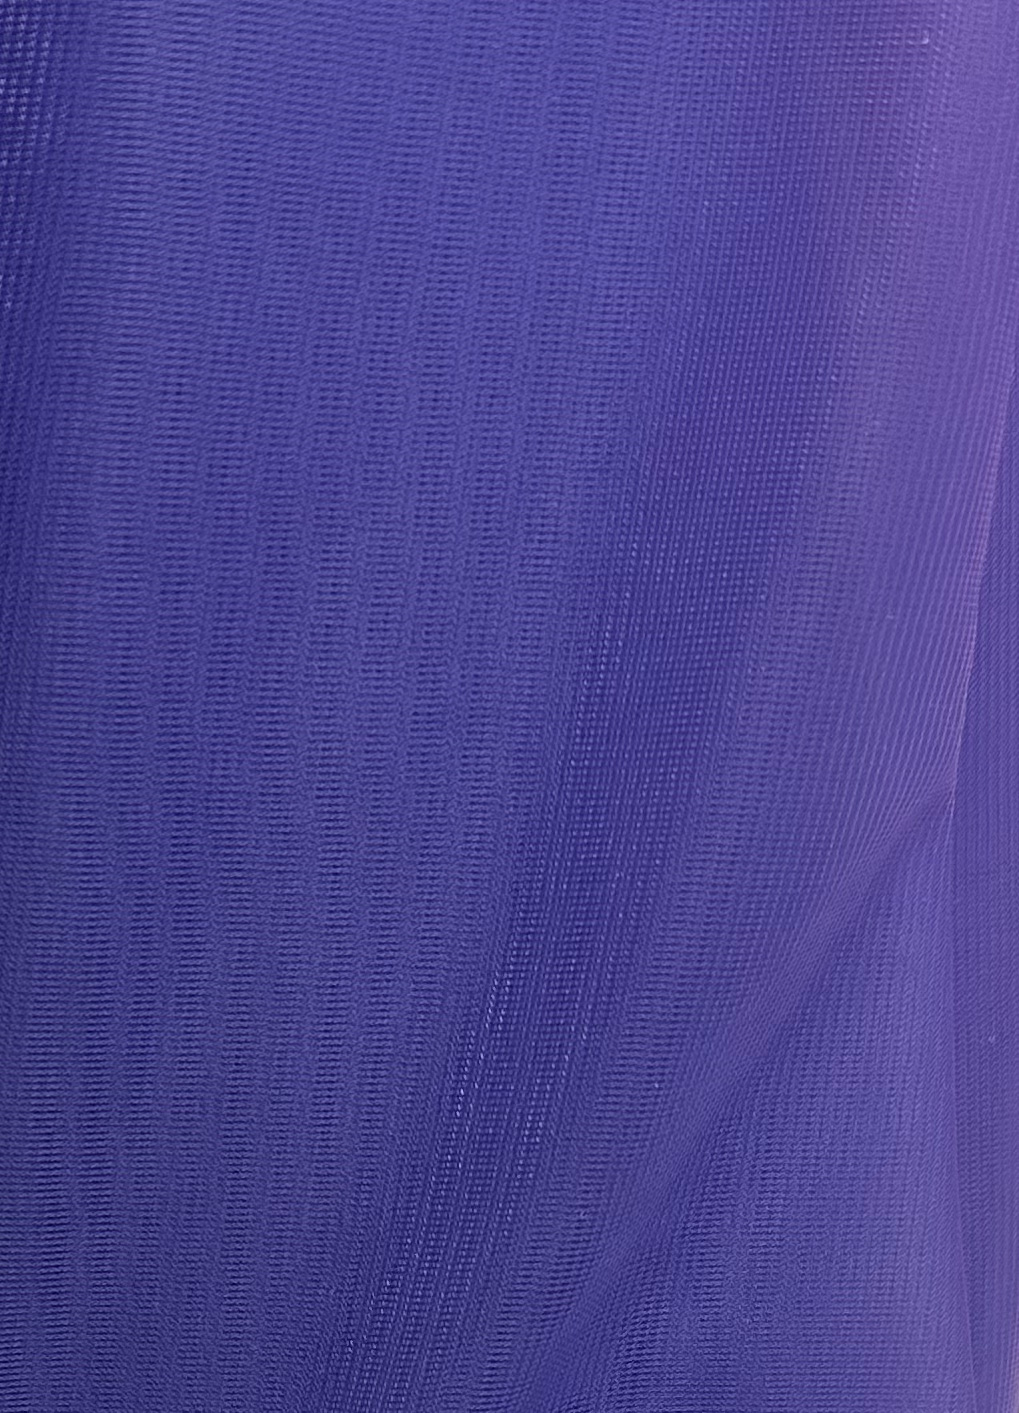 Nylon Chiffon Fabric - Sew Sassy Fabrics